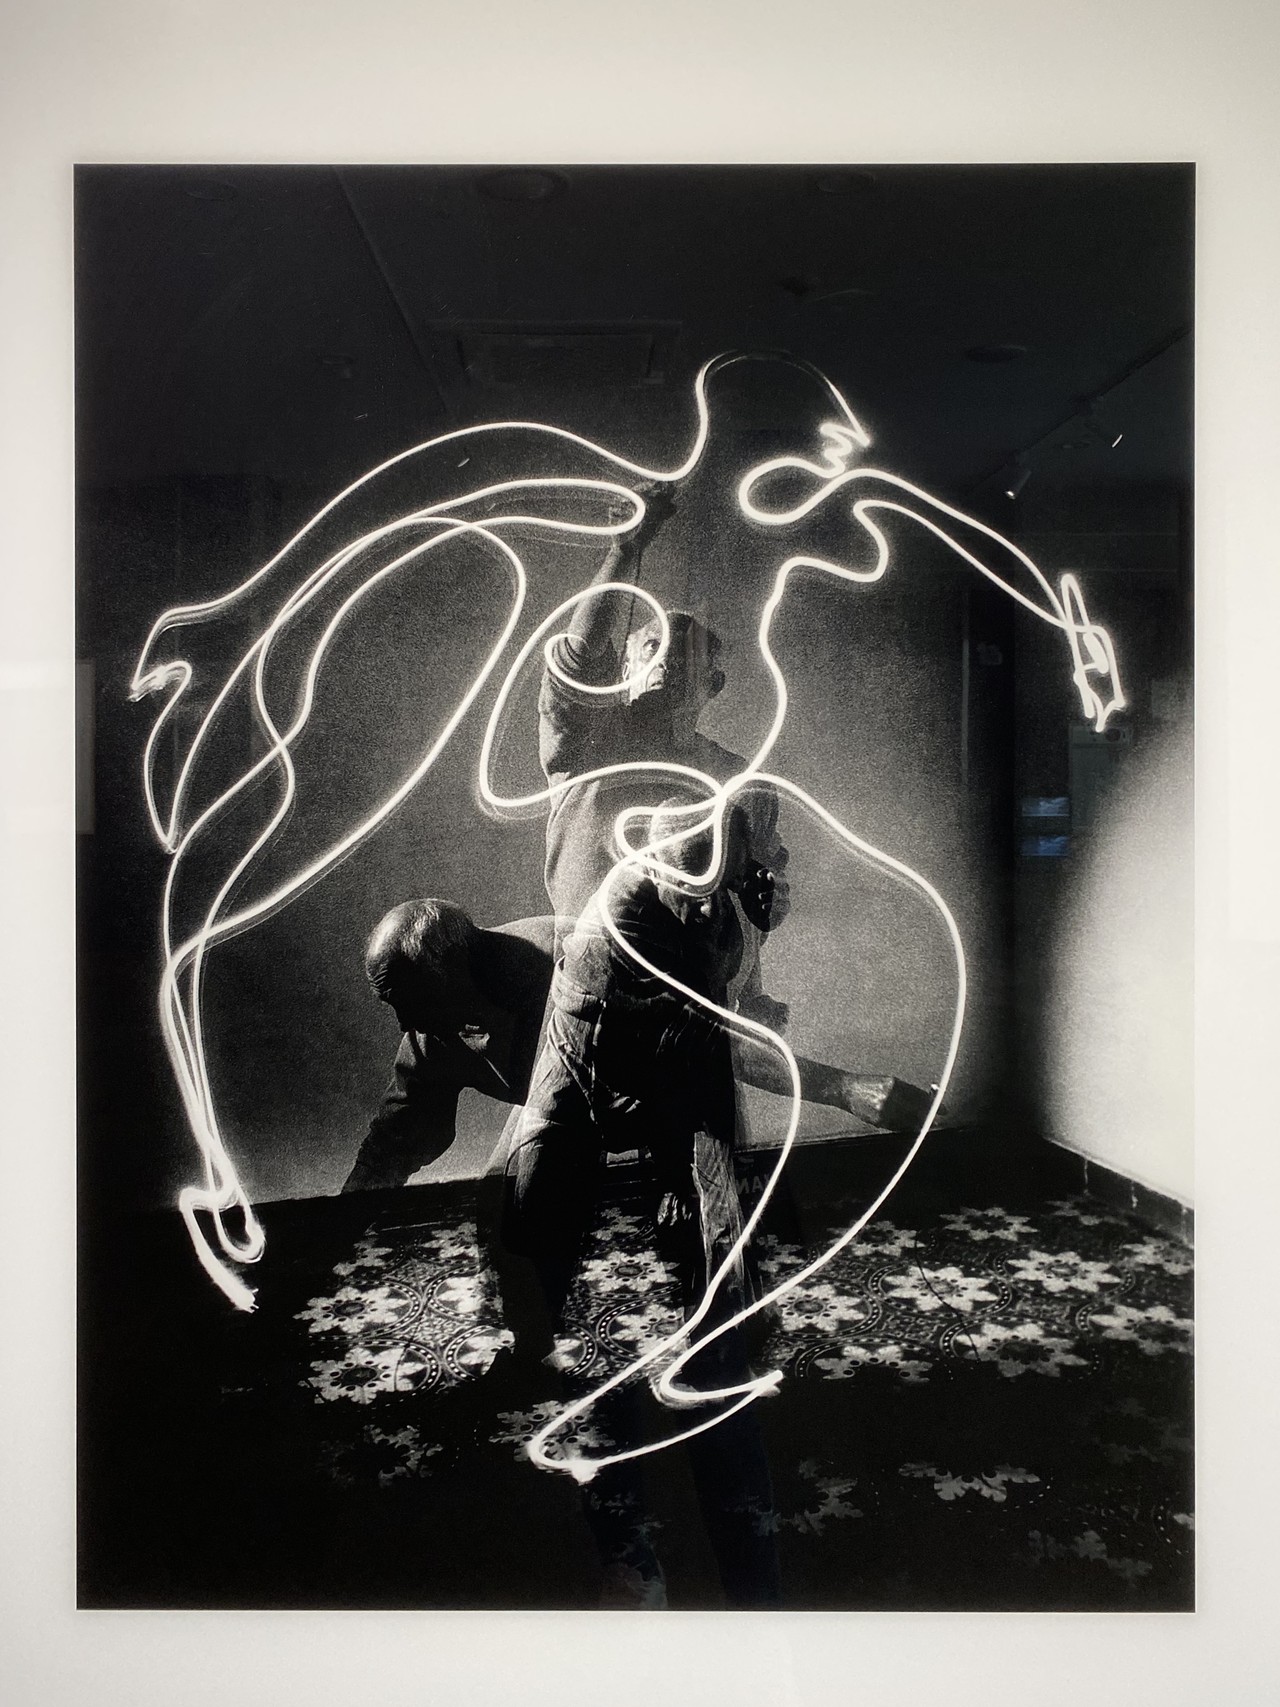 파블로 피카소가 손전등을 사용하여 허공에 그린 사람의 모습을 다중노출로 촬영한 사진 (욘 밀리, 1949)©배가현 기자